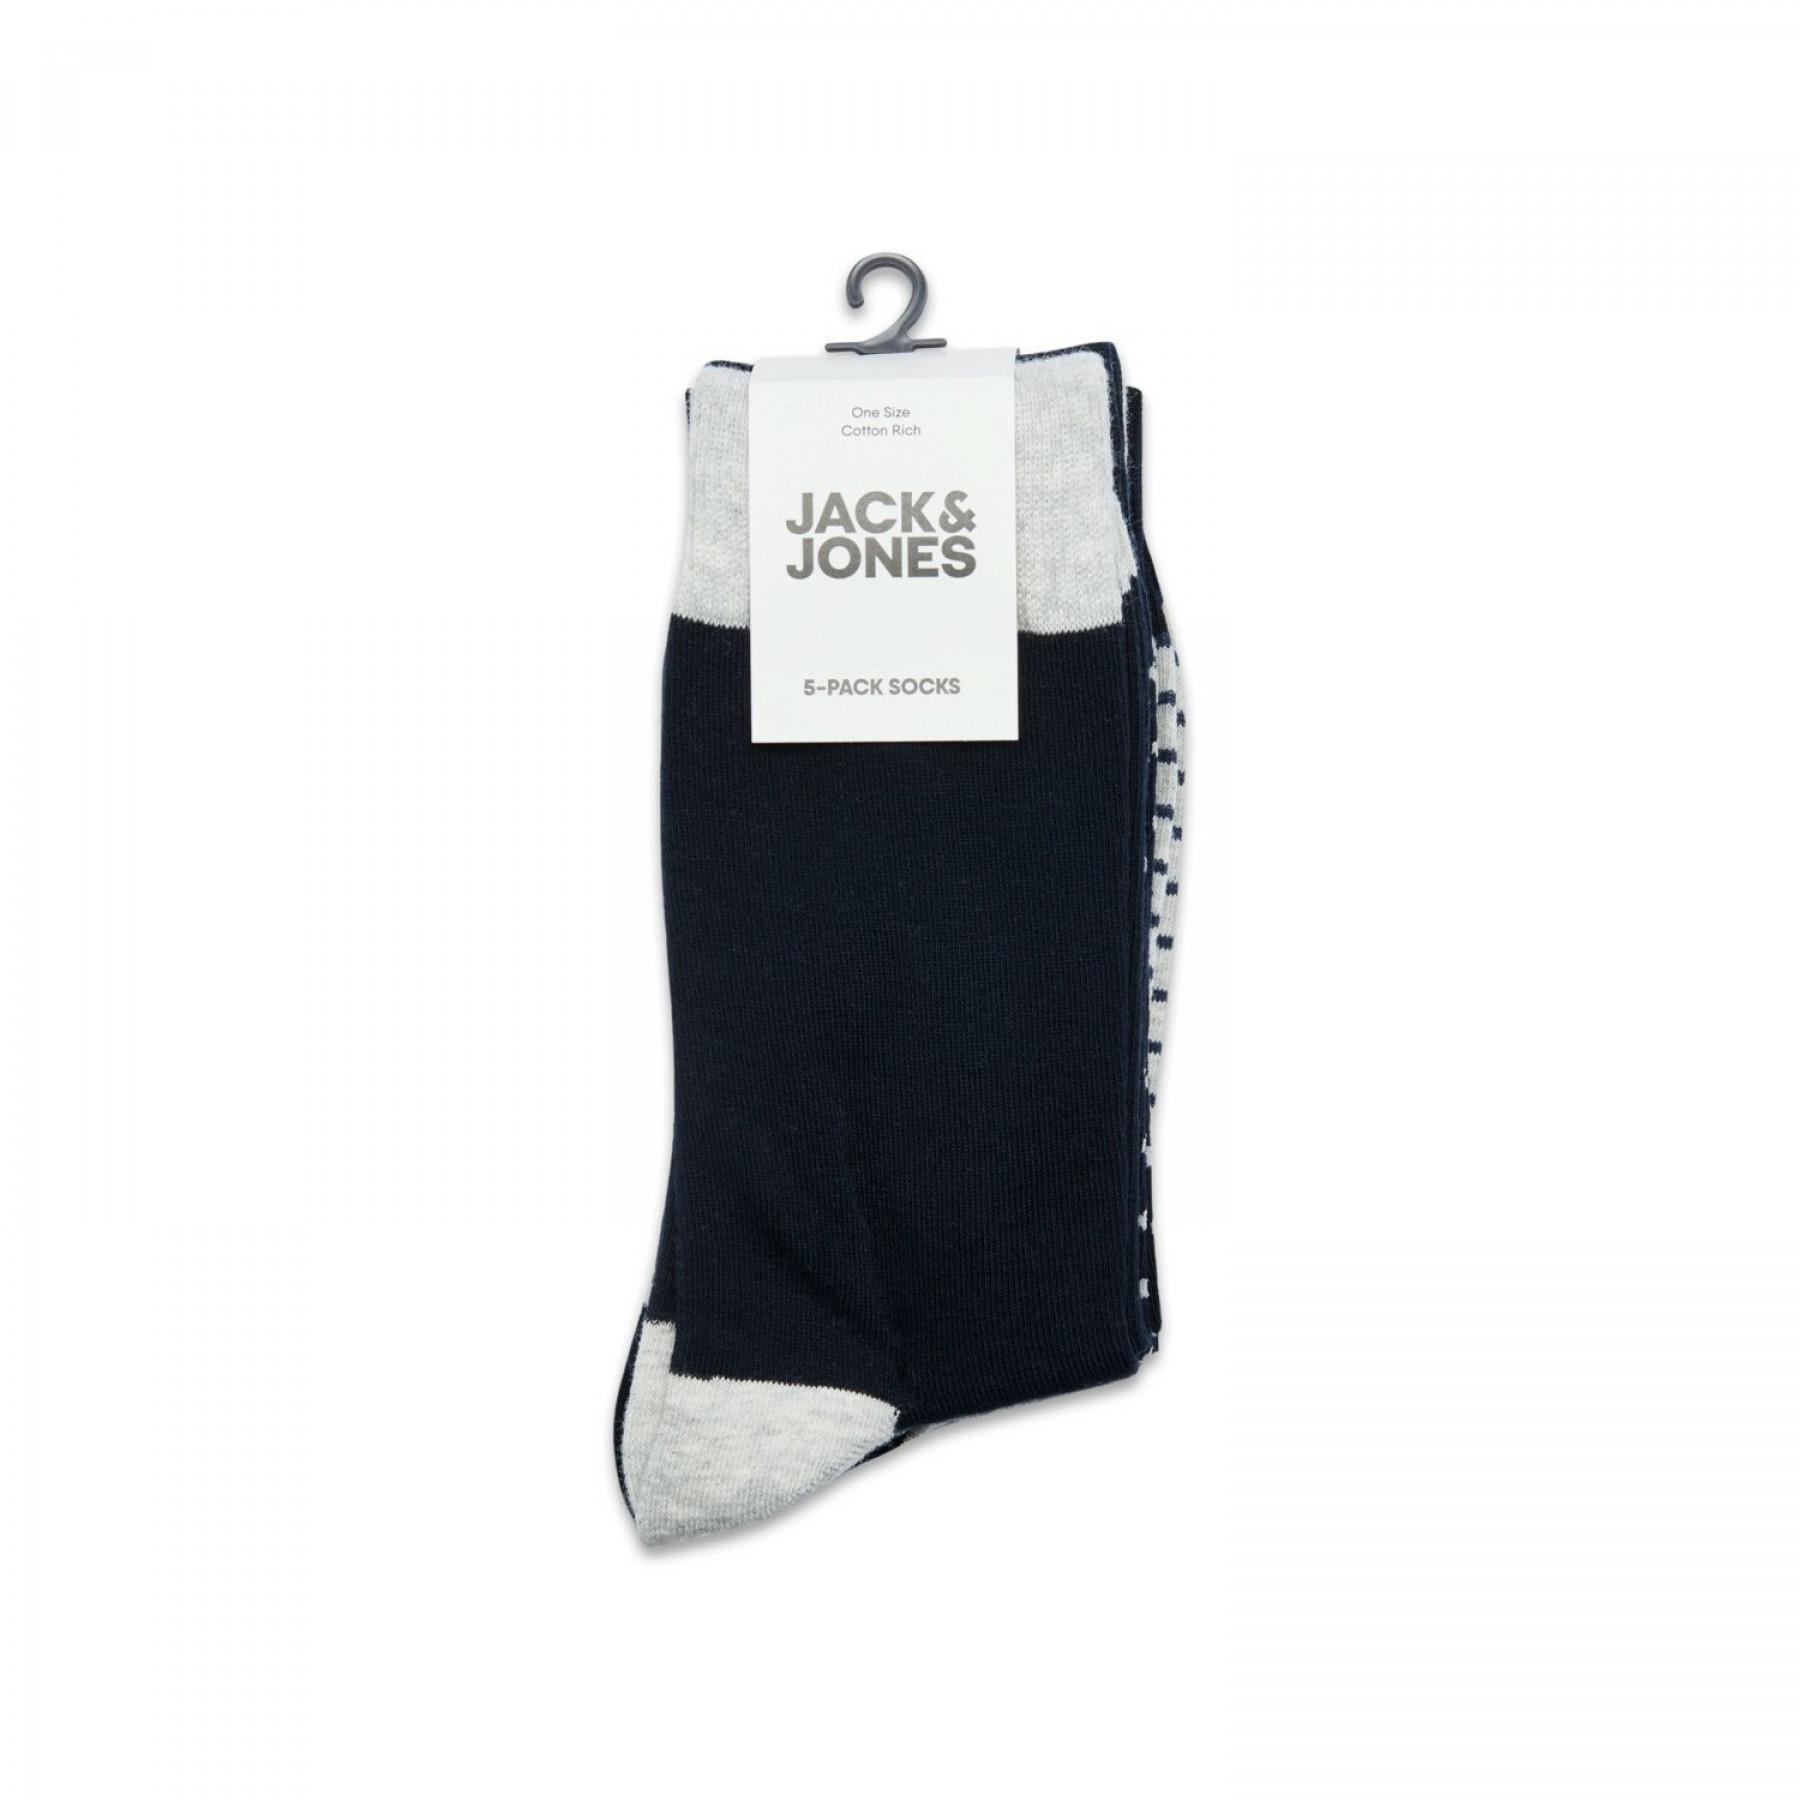 Confezione da 5 paia di calzini Jack & Jones light